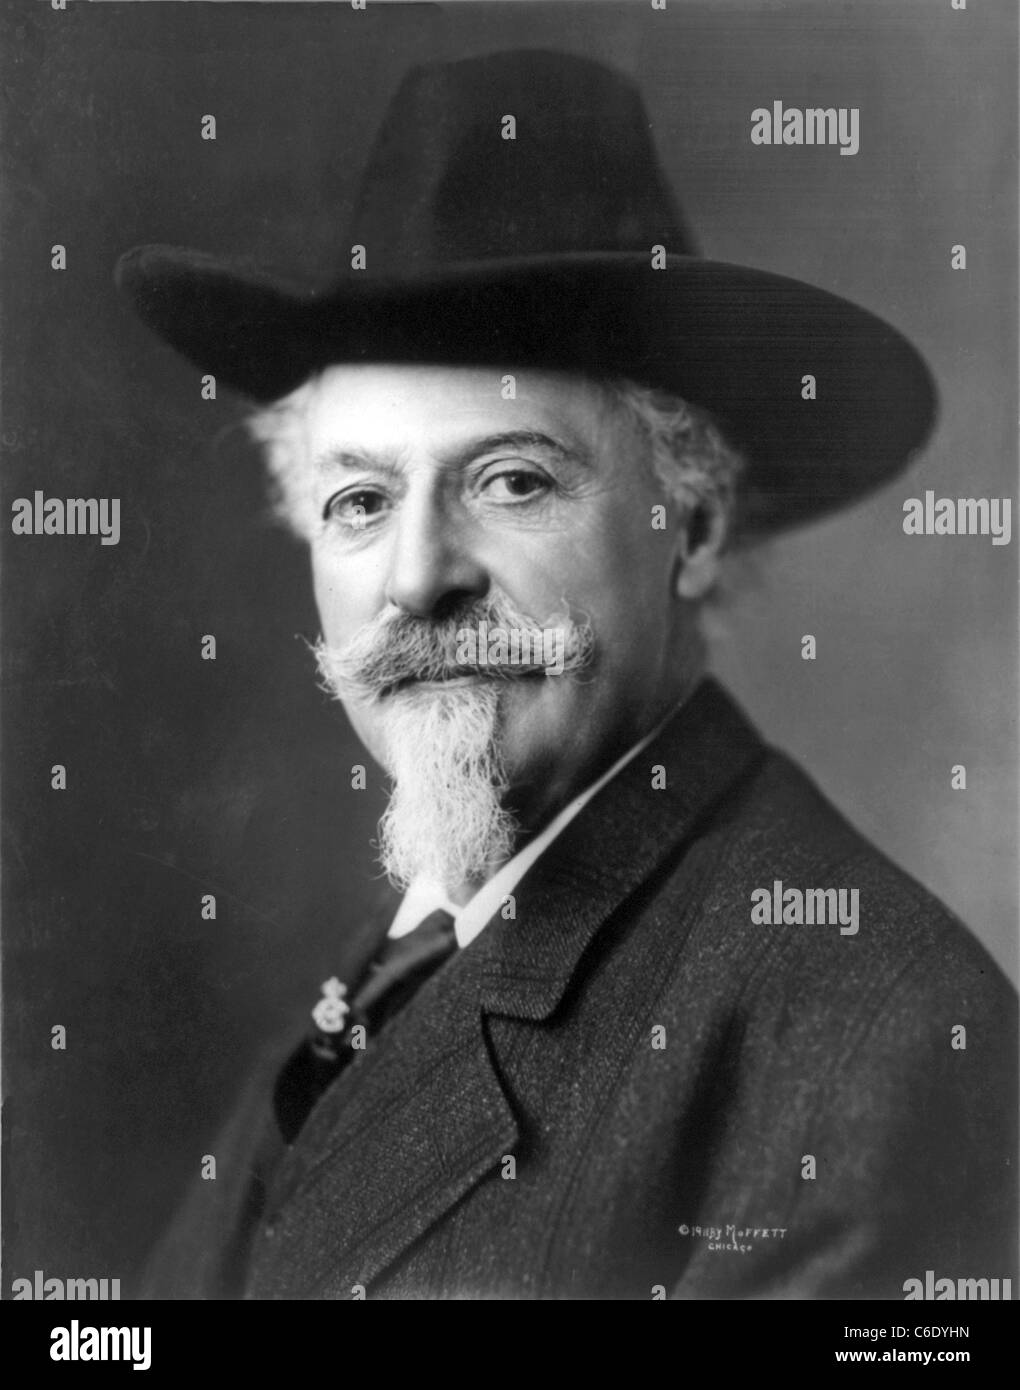 WILLIAM "BUFFALO BILL" Cody (1846-1917) soldat américain, Hunter et showman photographié en 1911 Banque D'Images